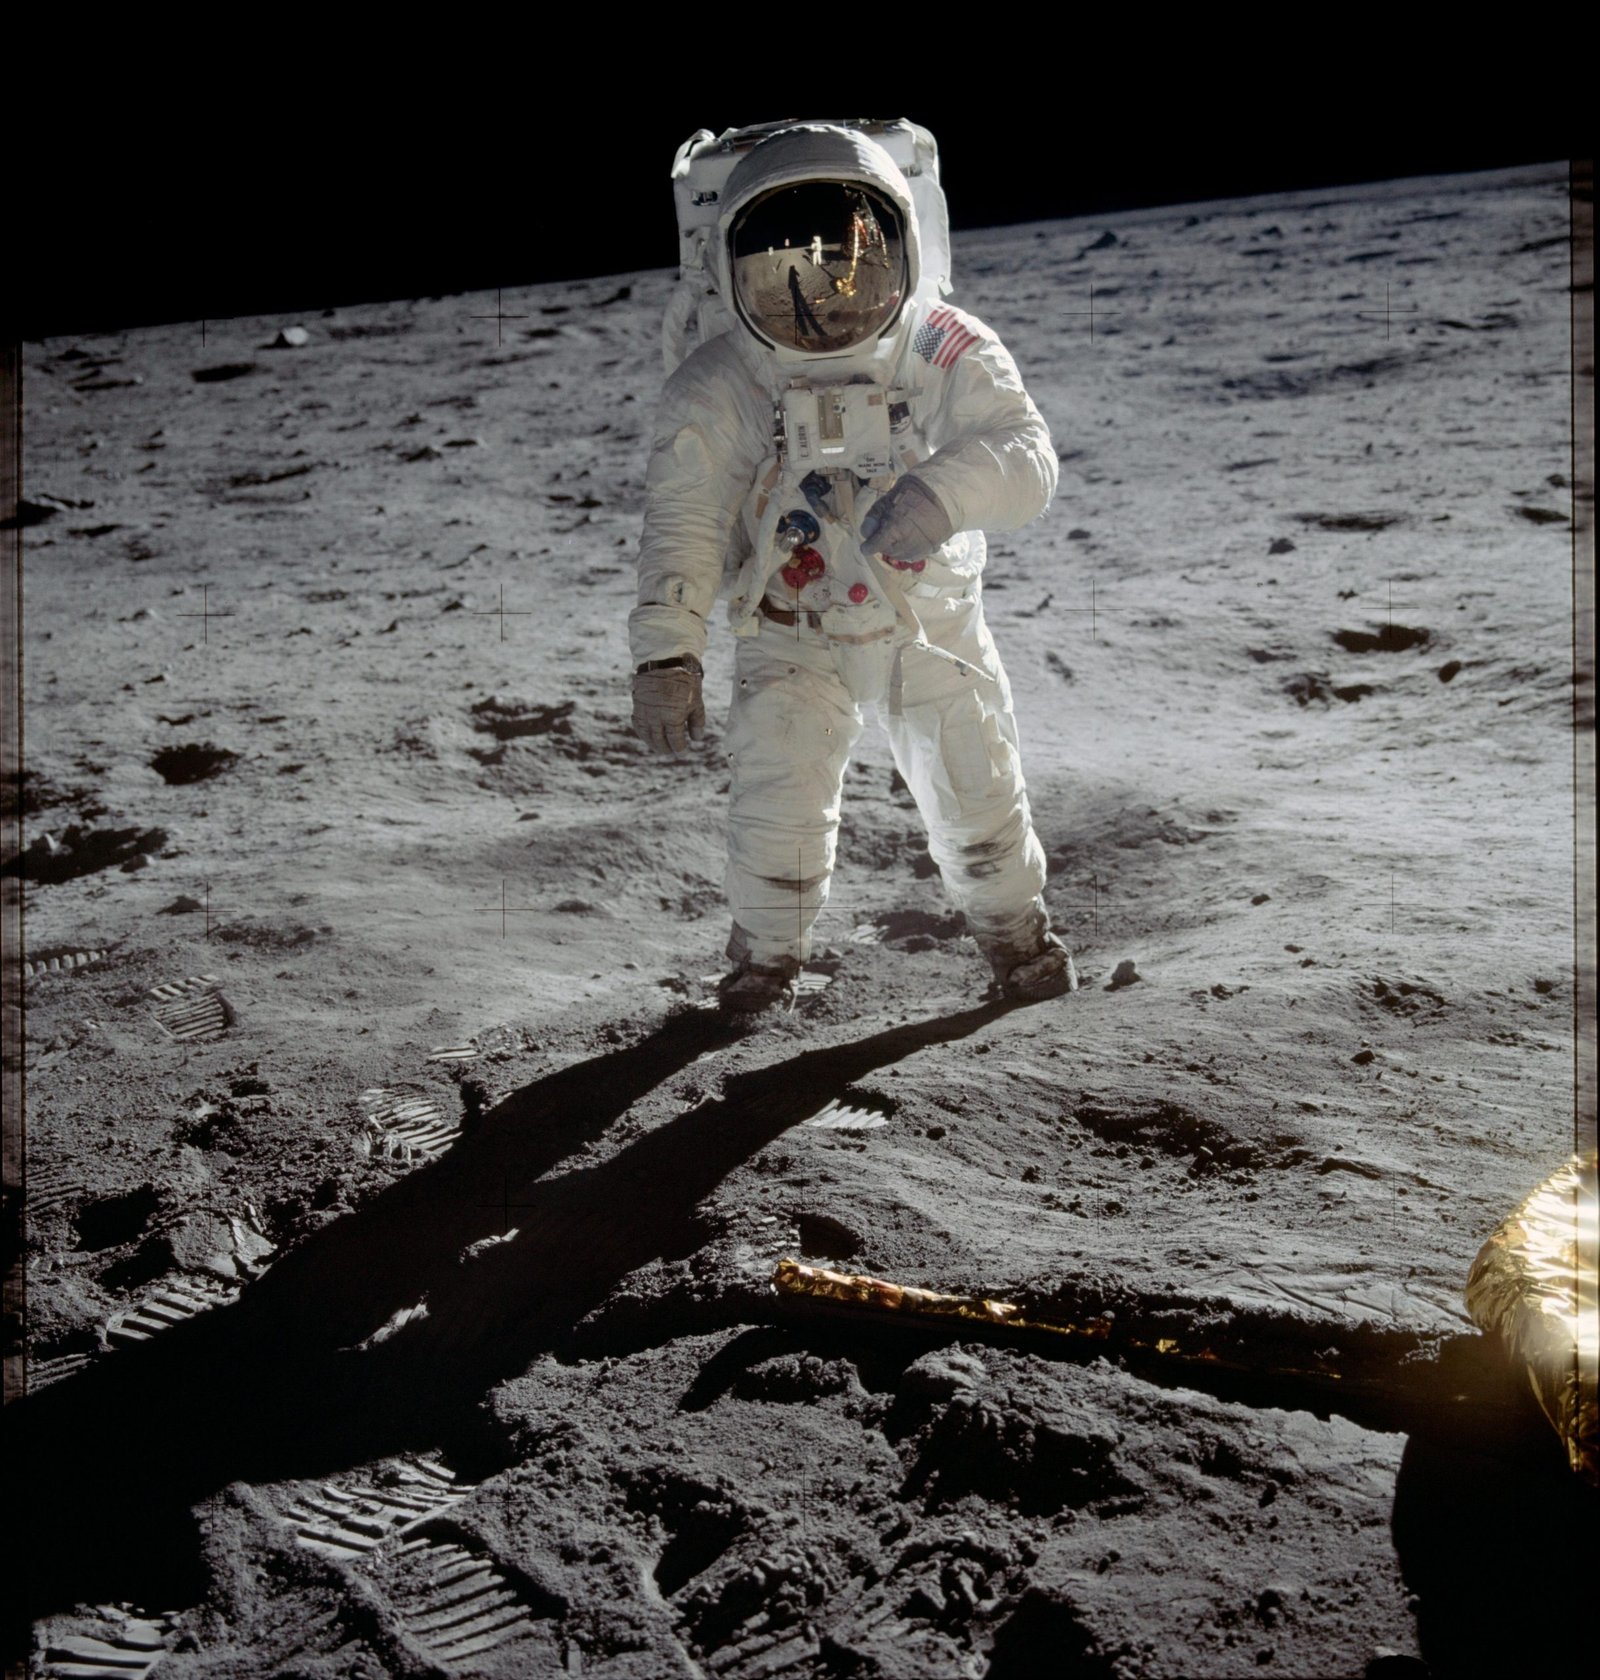 Buzz Aldrin on the Moon, Armstrong Visor Reflection, NASA